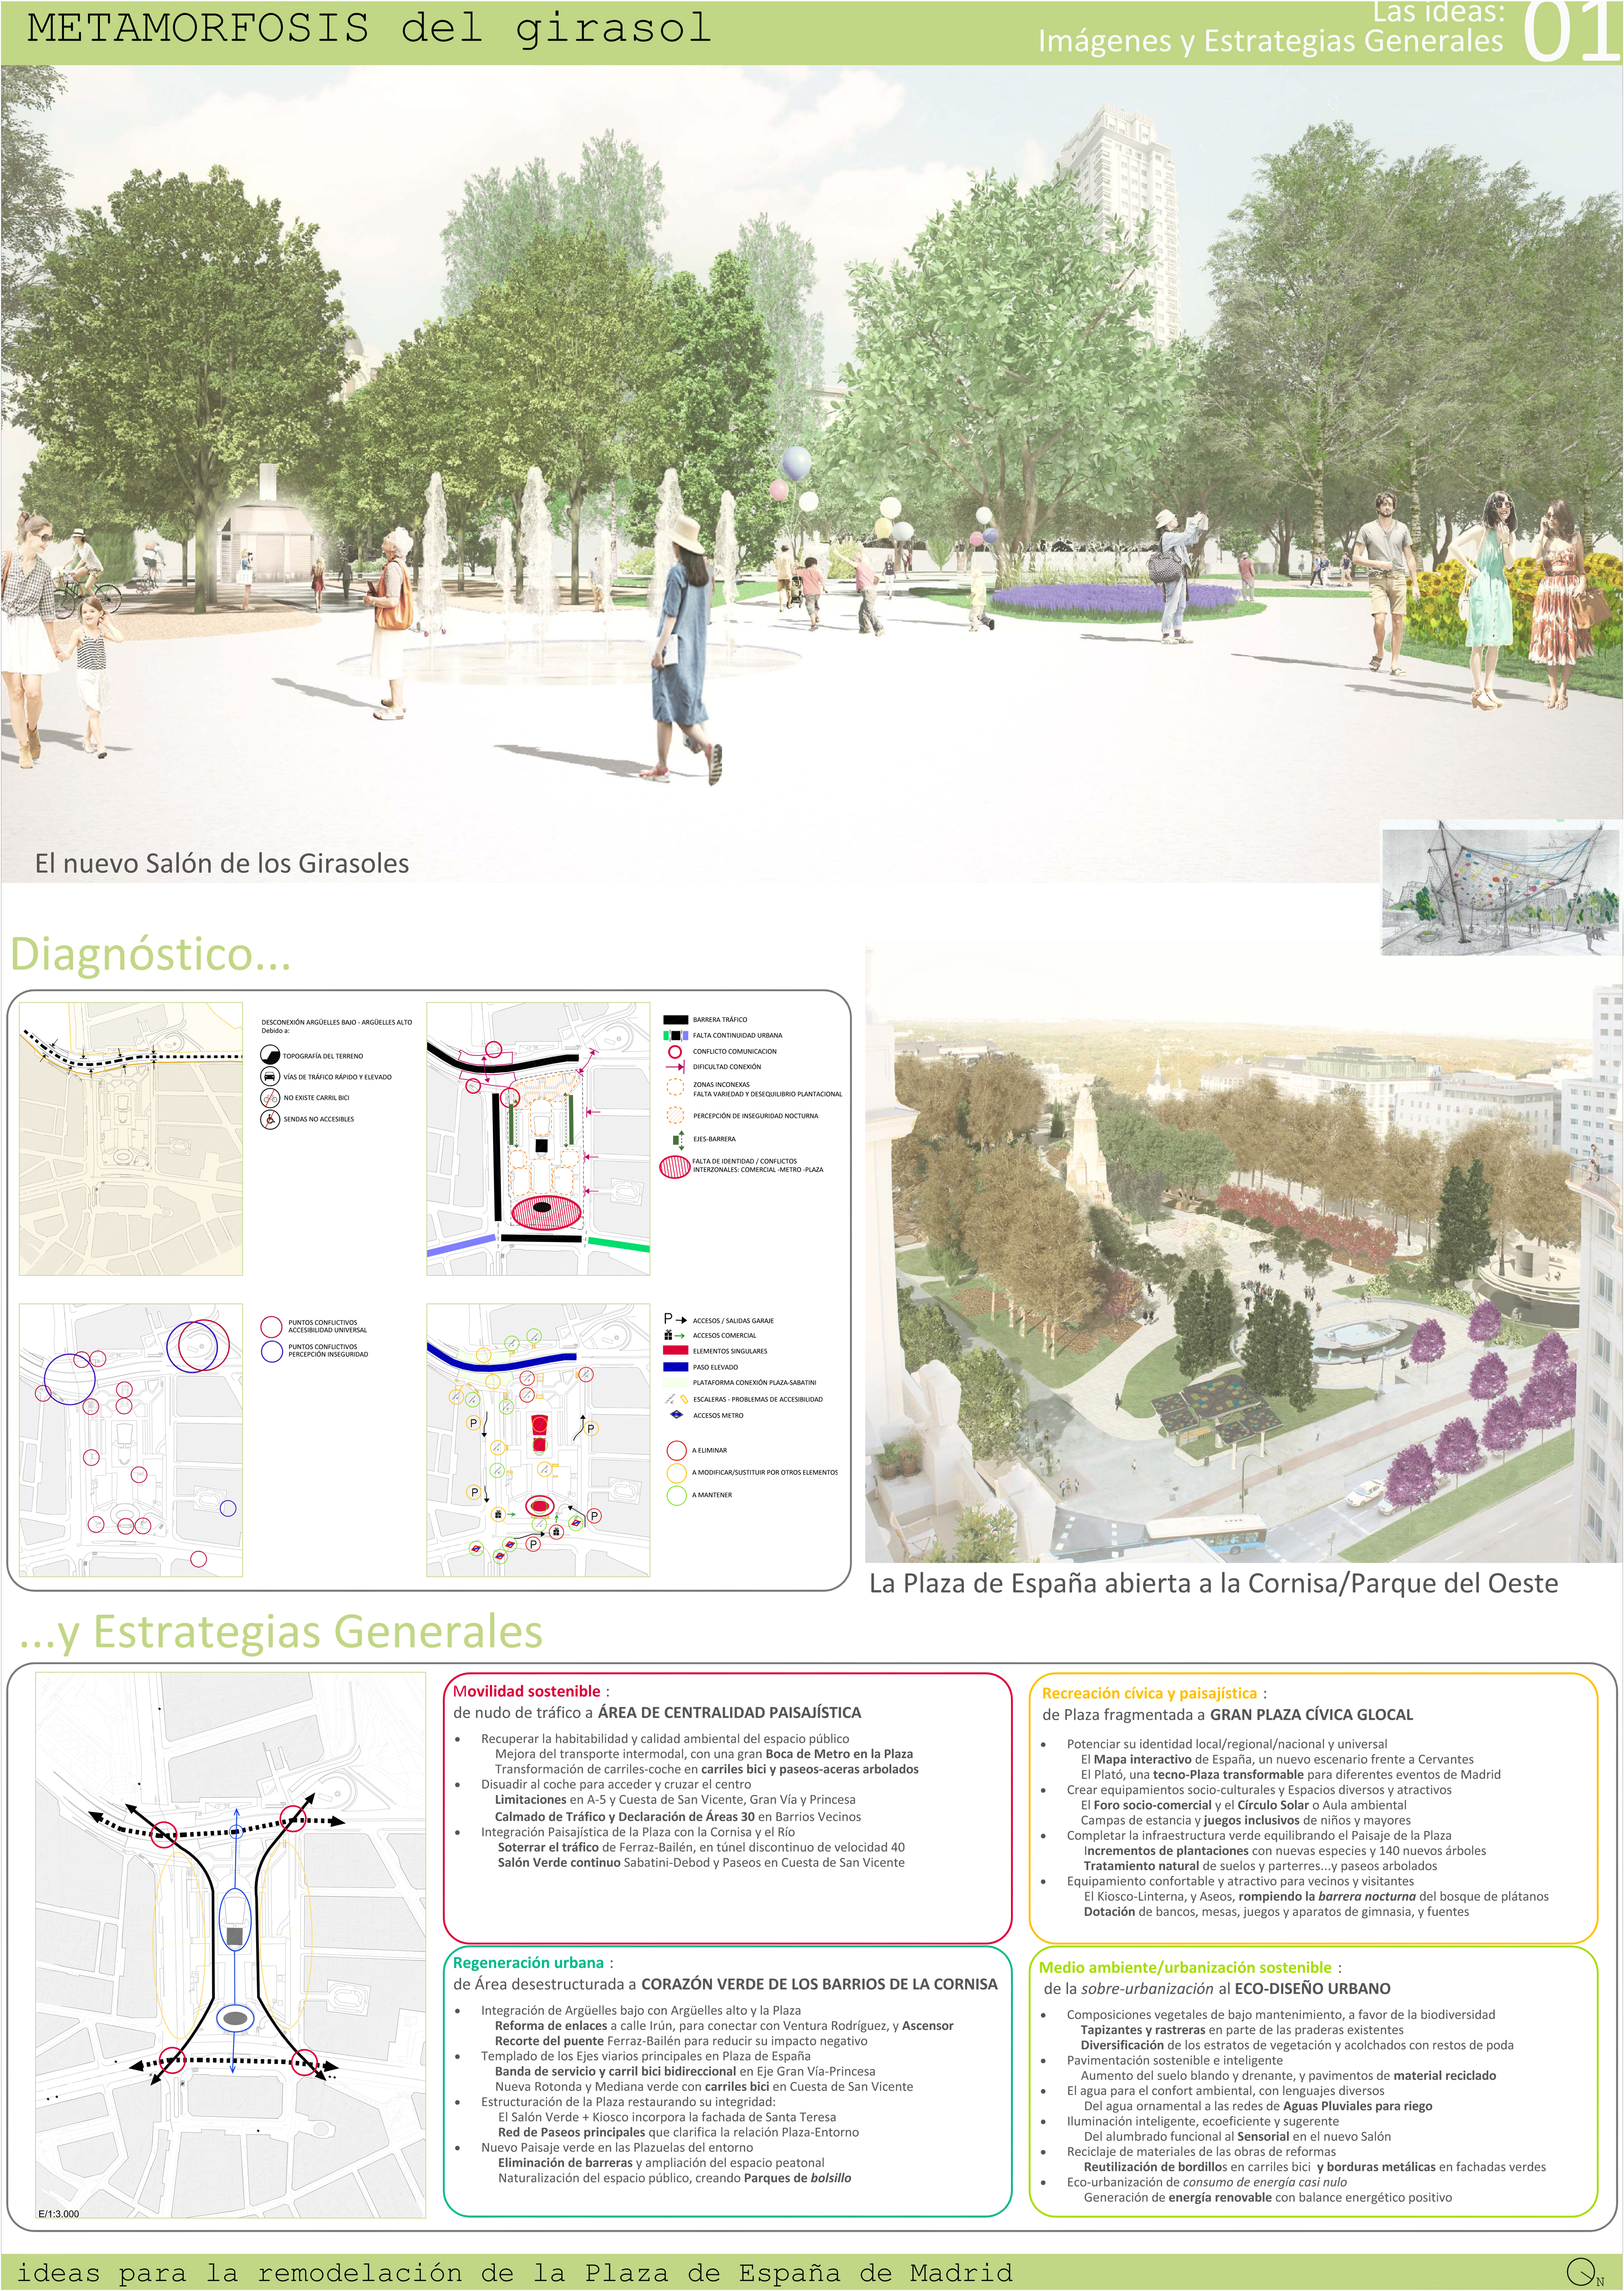 Proyecto 27 para la Remodelación de Plaza España: Metamorfosis del girasol